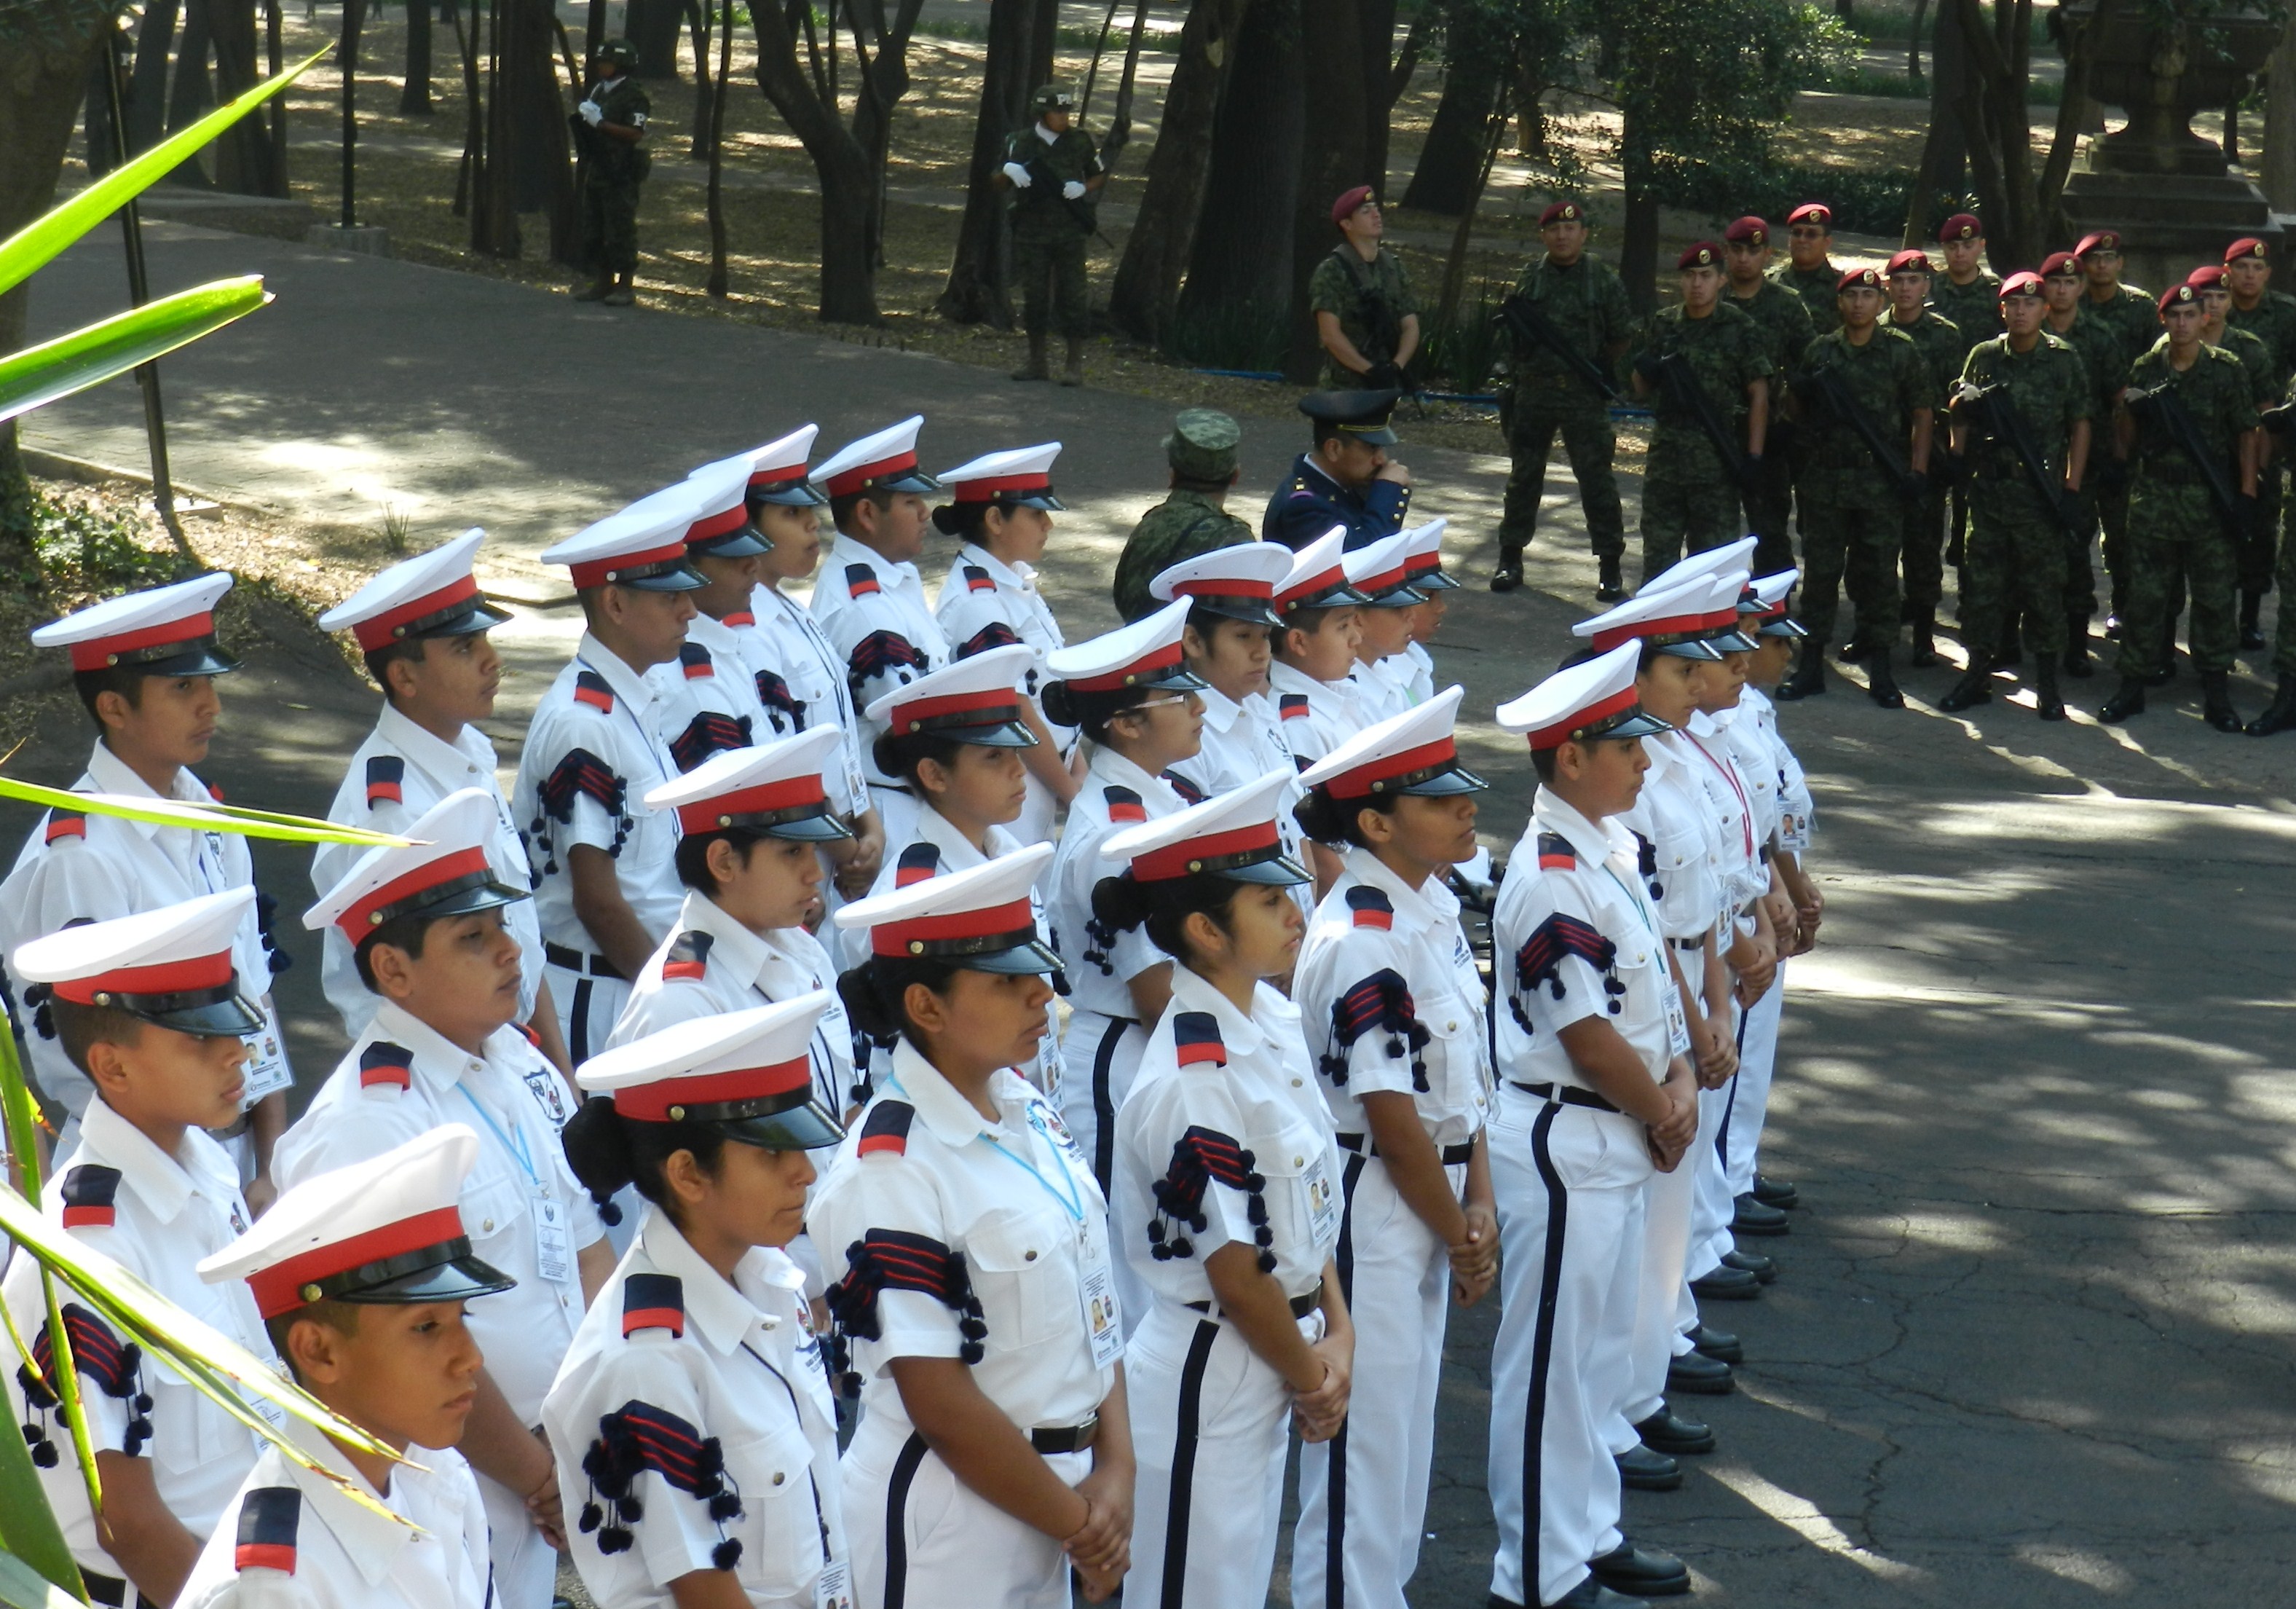 A la Ceremonia asistiot la Banda de Guerra "Escuadrón 201" de la Escuela Secundaria No. 4 de Nuevo laredo, Tamps. invitada por la FAM.